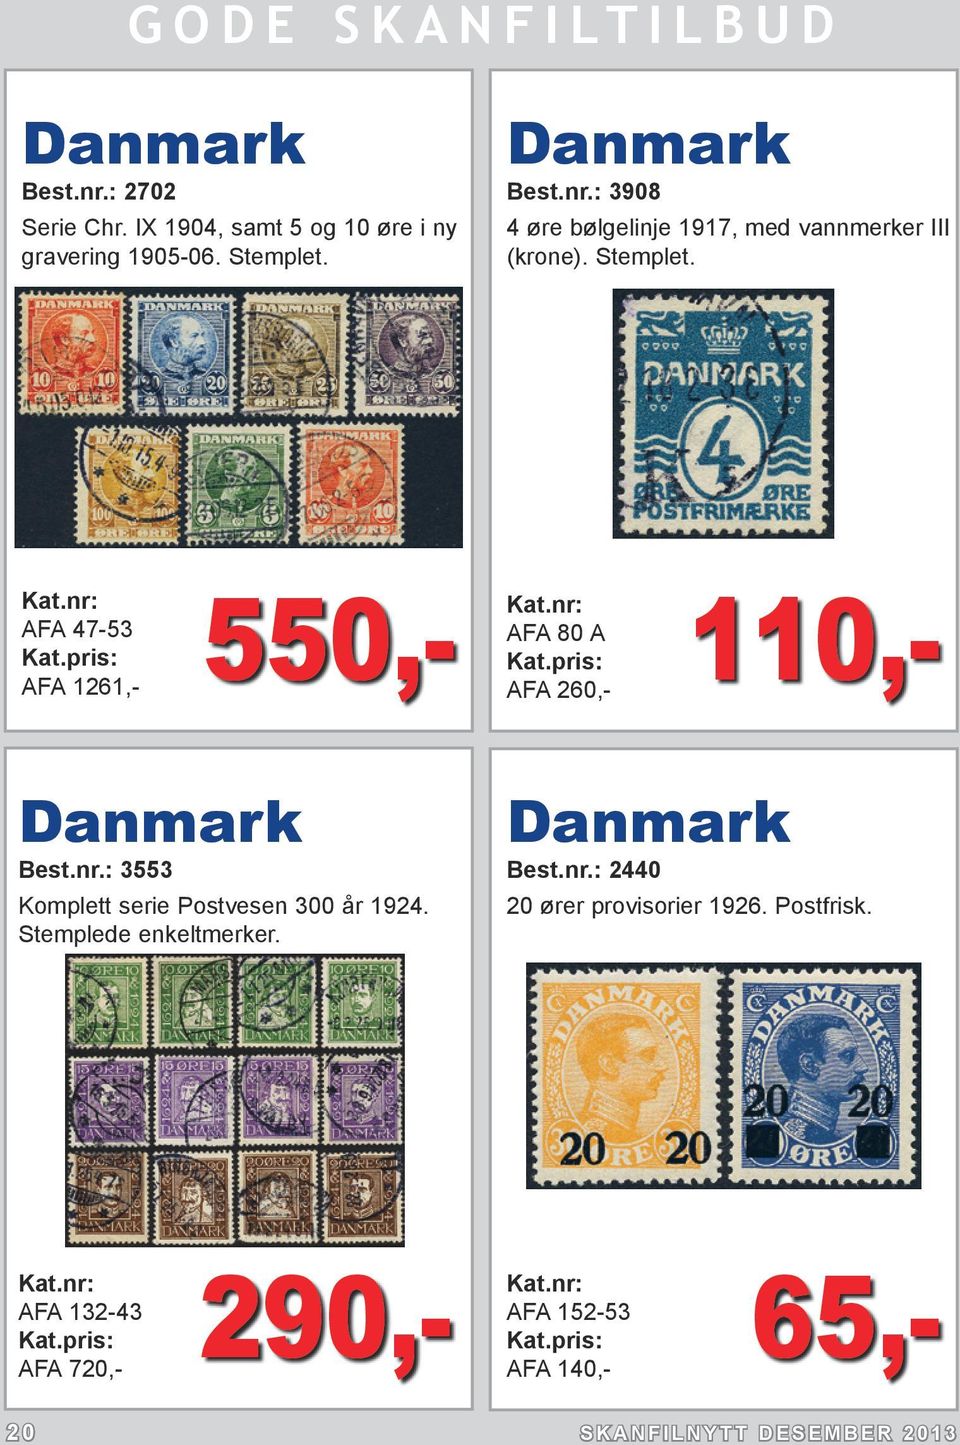 : 3553 Komplett serie Postvesen 300 år 1924. Stemplede enkeltmerker. Danmark Best.nr.